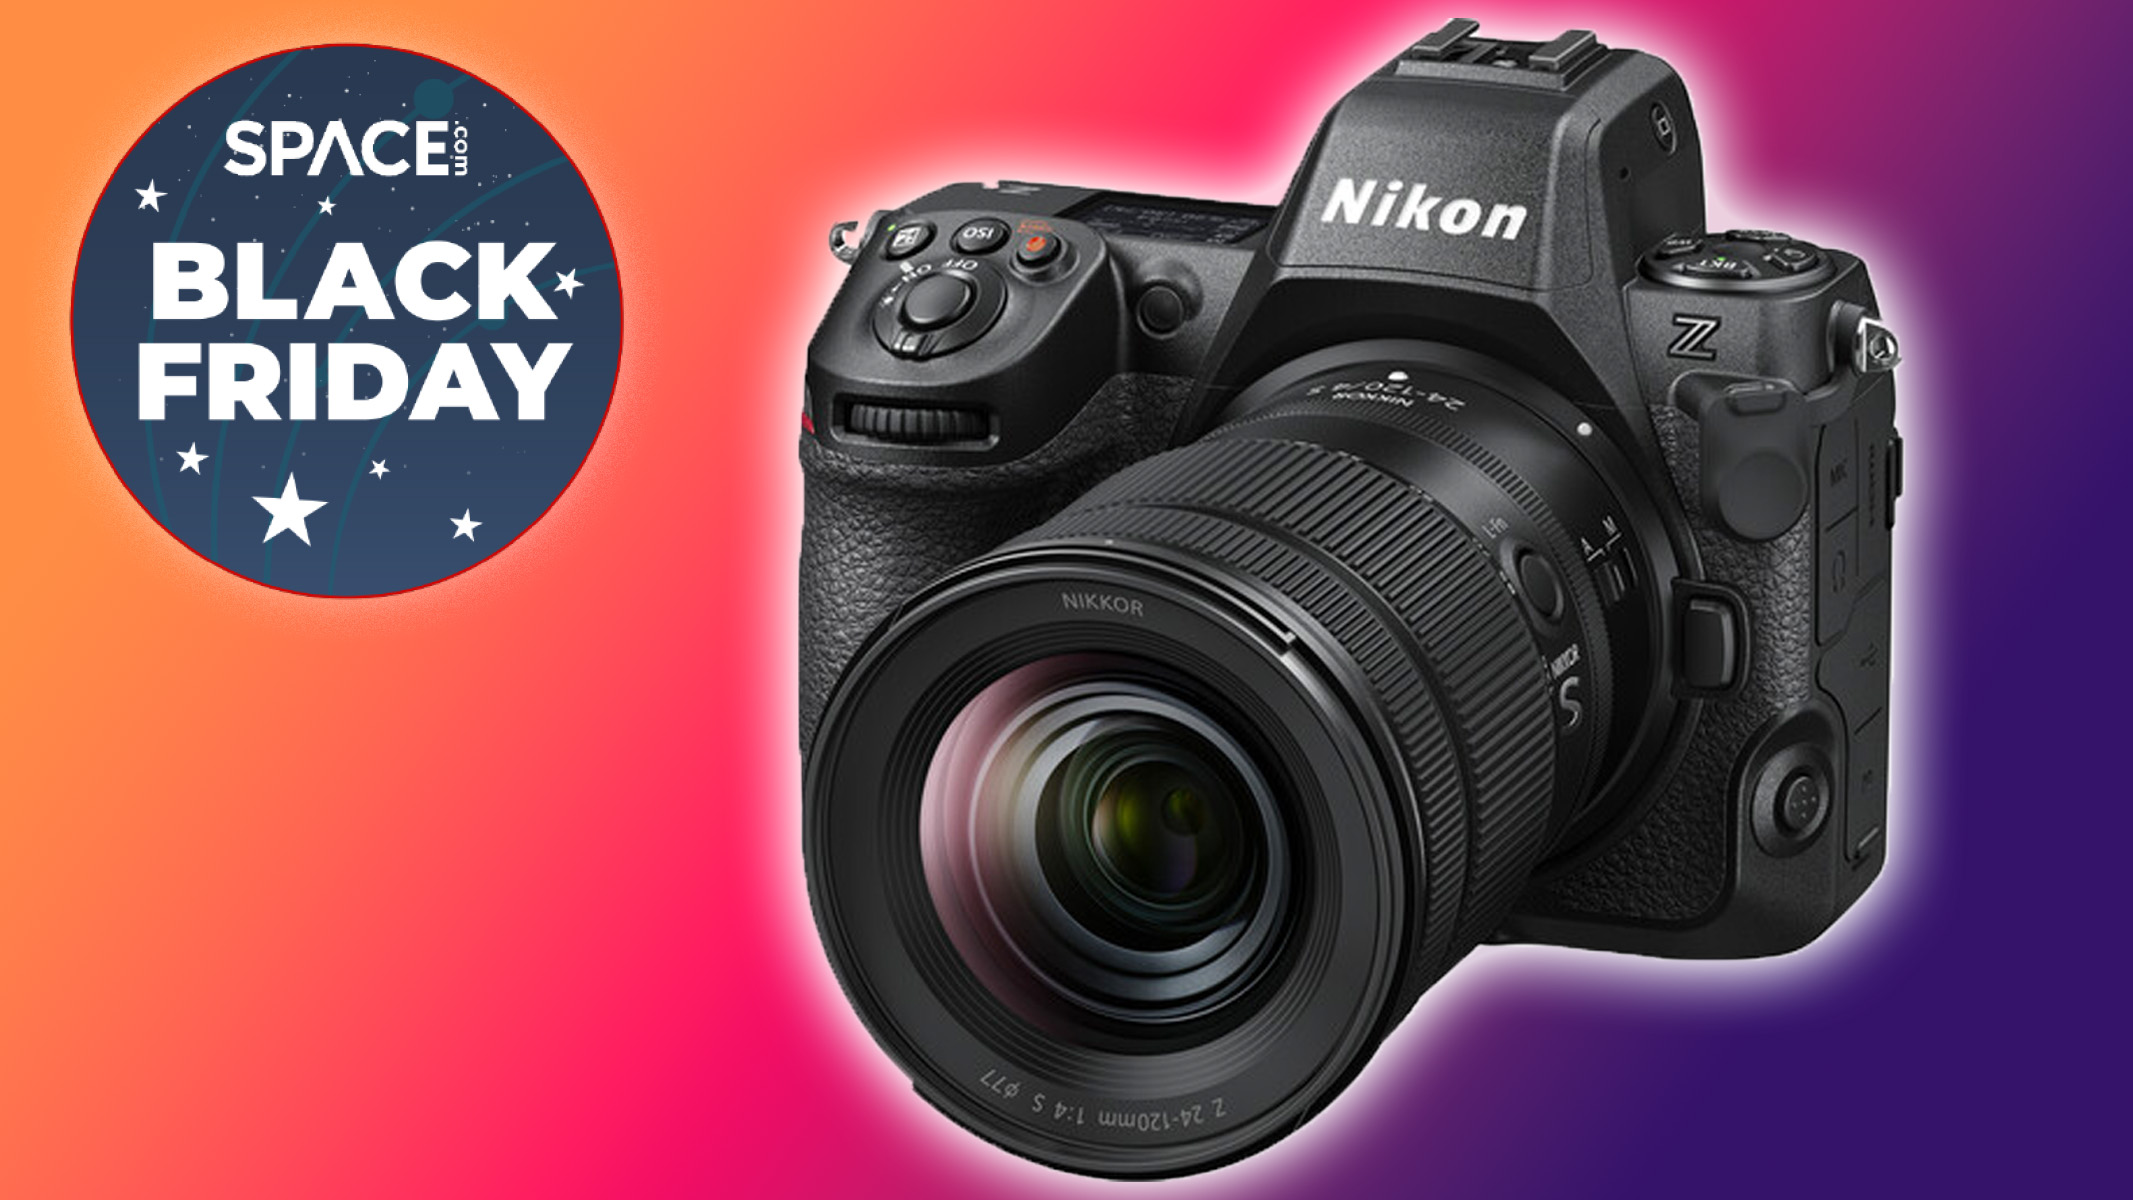  Nikon Z8 & lens bundle $200 off: Black Friday camera deal 